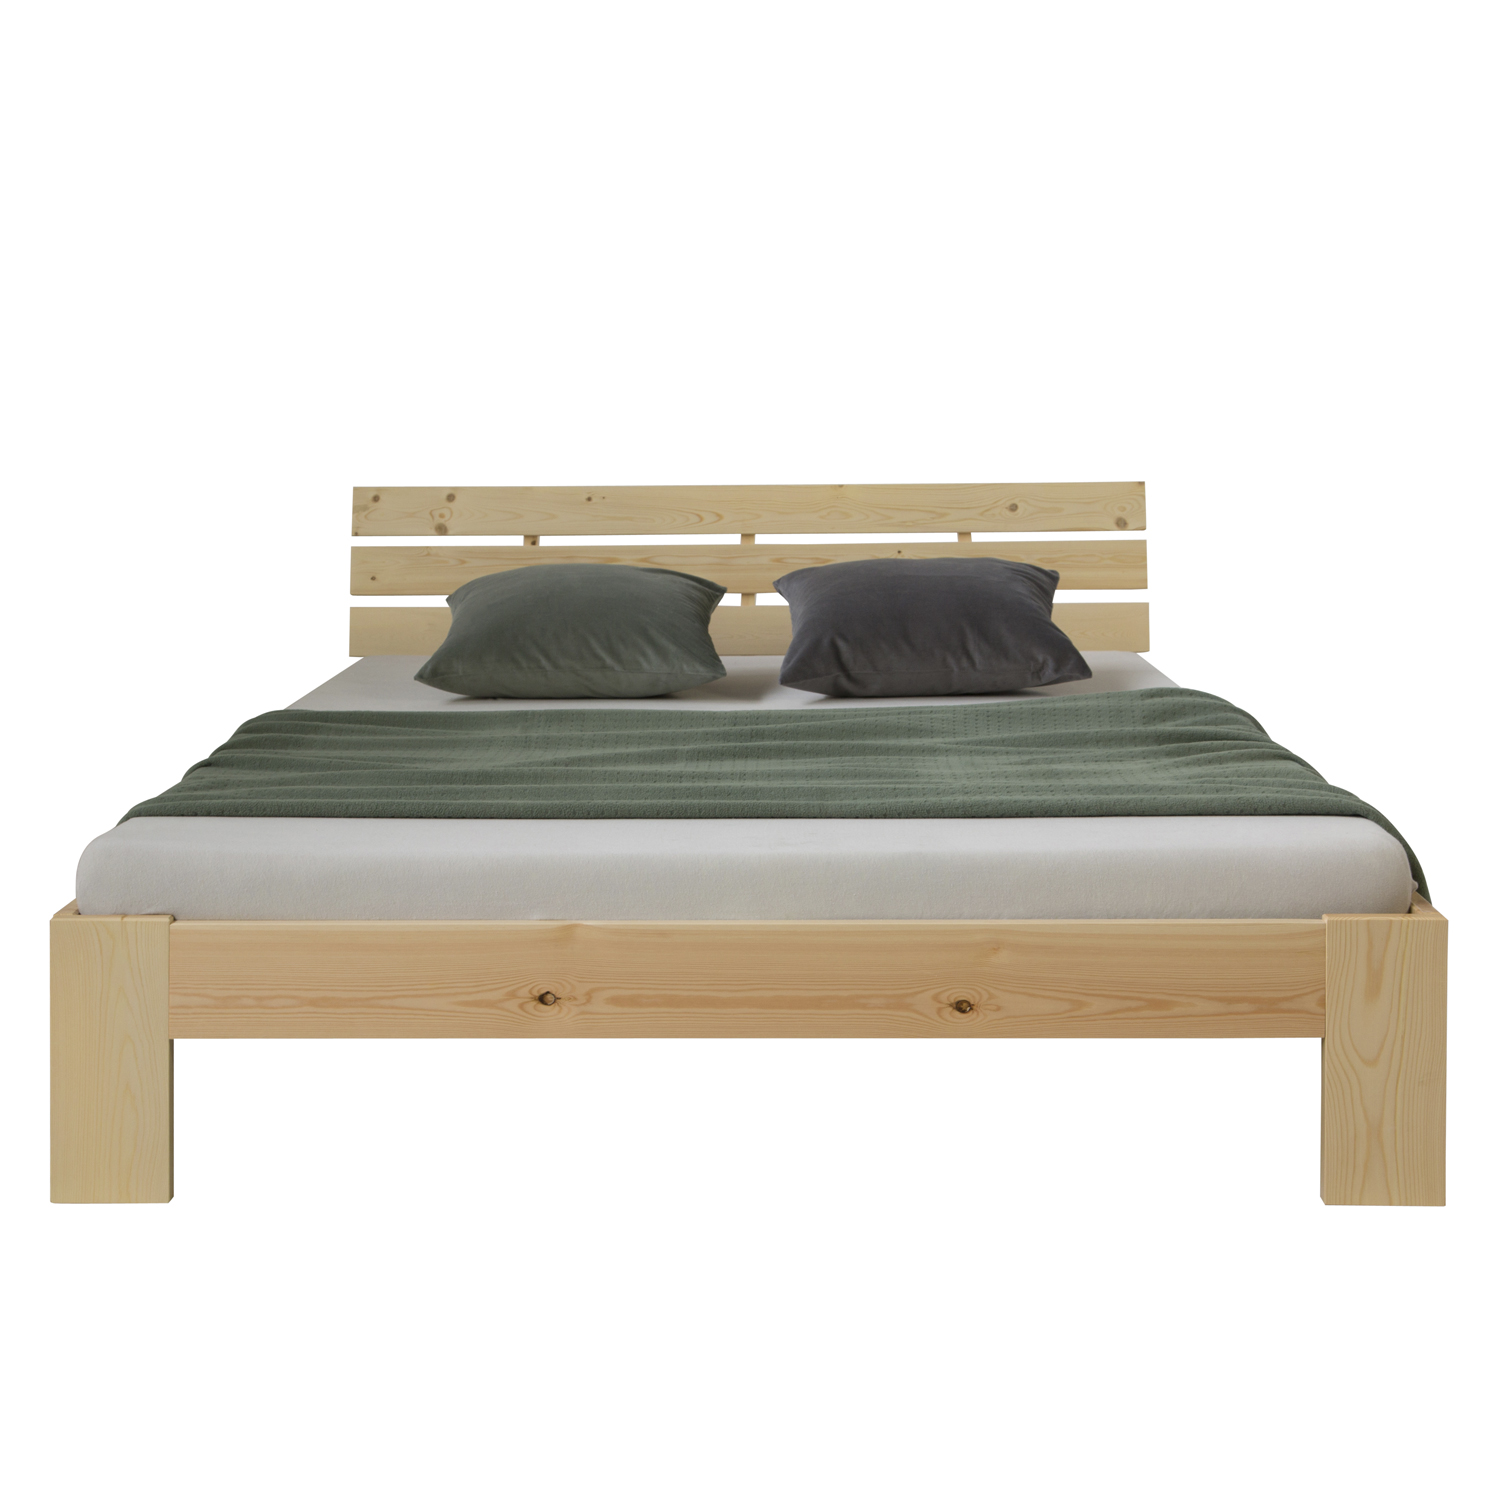 Doppelbett mit Matratze 120x200 cm Holzbett Futonbett Natur Kiefer Bett Bettgestell Massivholz